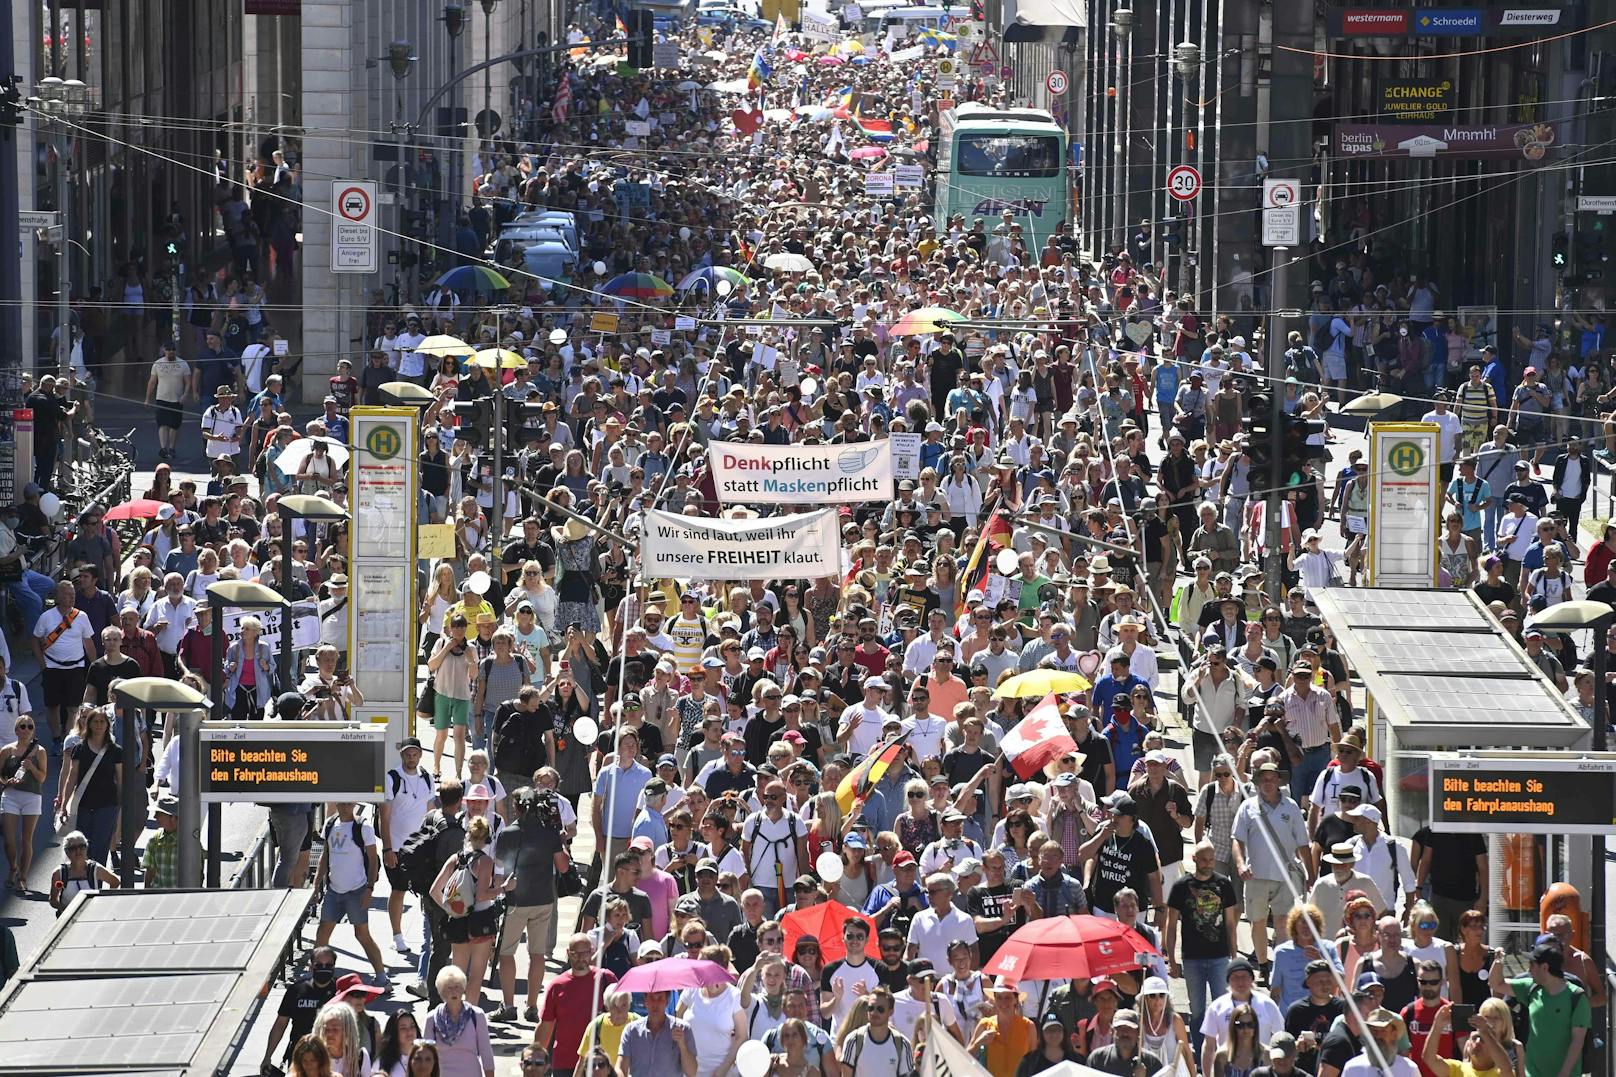 Zehtnausende Menschen gingen in Berlin auf die Straße, um gegen die Corona-Maßnahmen zu demonstrieren. 